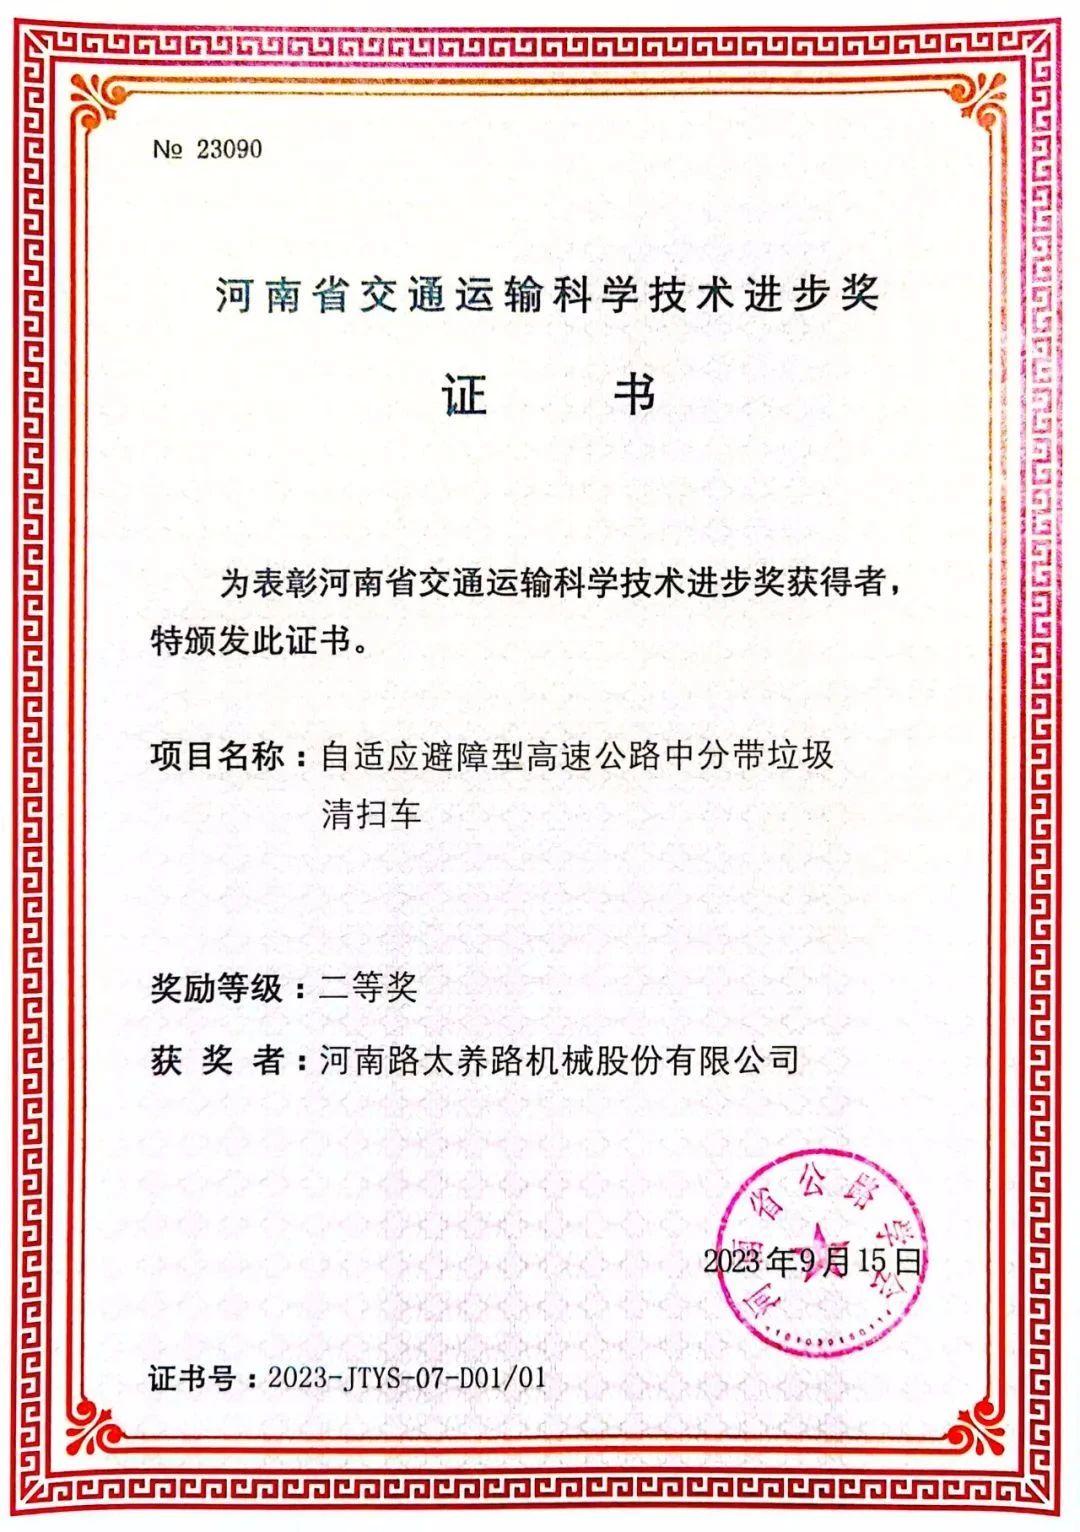 万里交科旗下路太机械公司荣获2023年度“河南省交通运输科学技术进步奖”